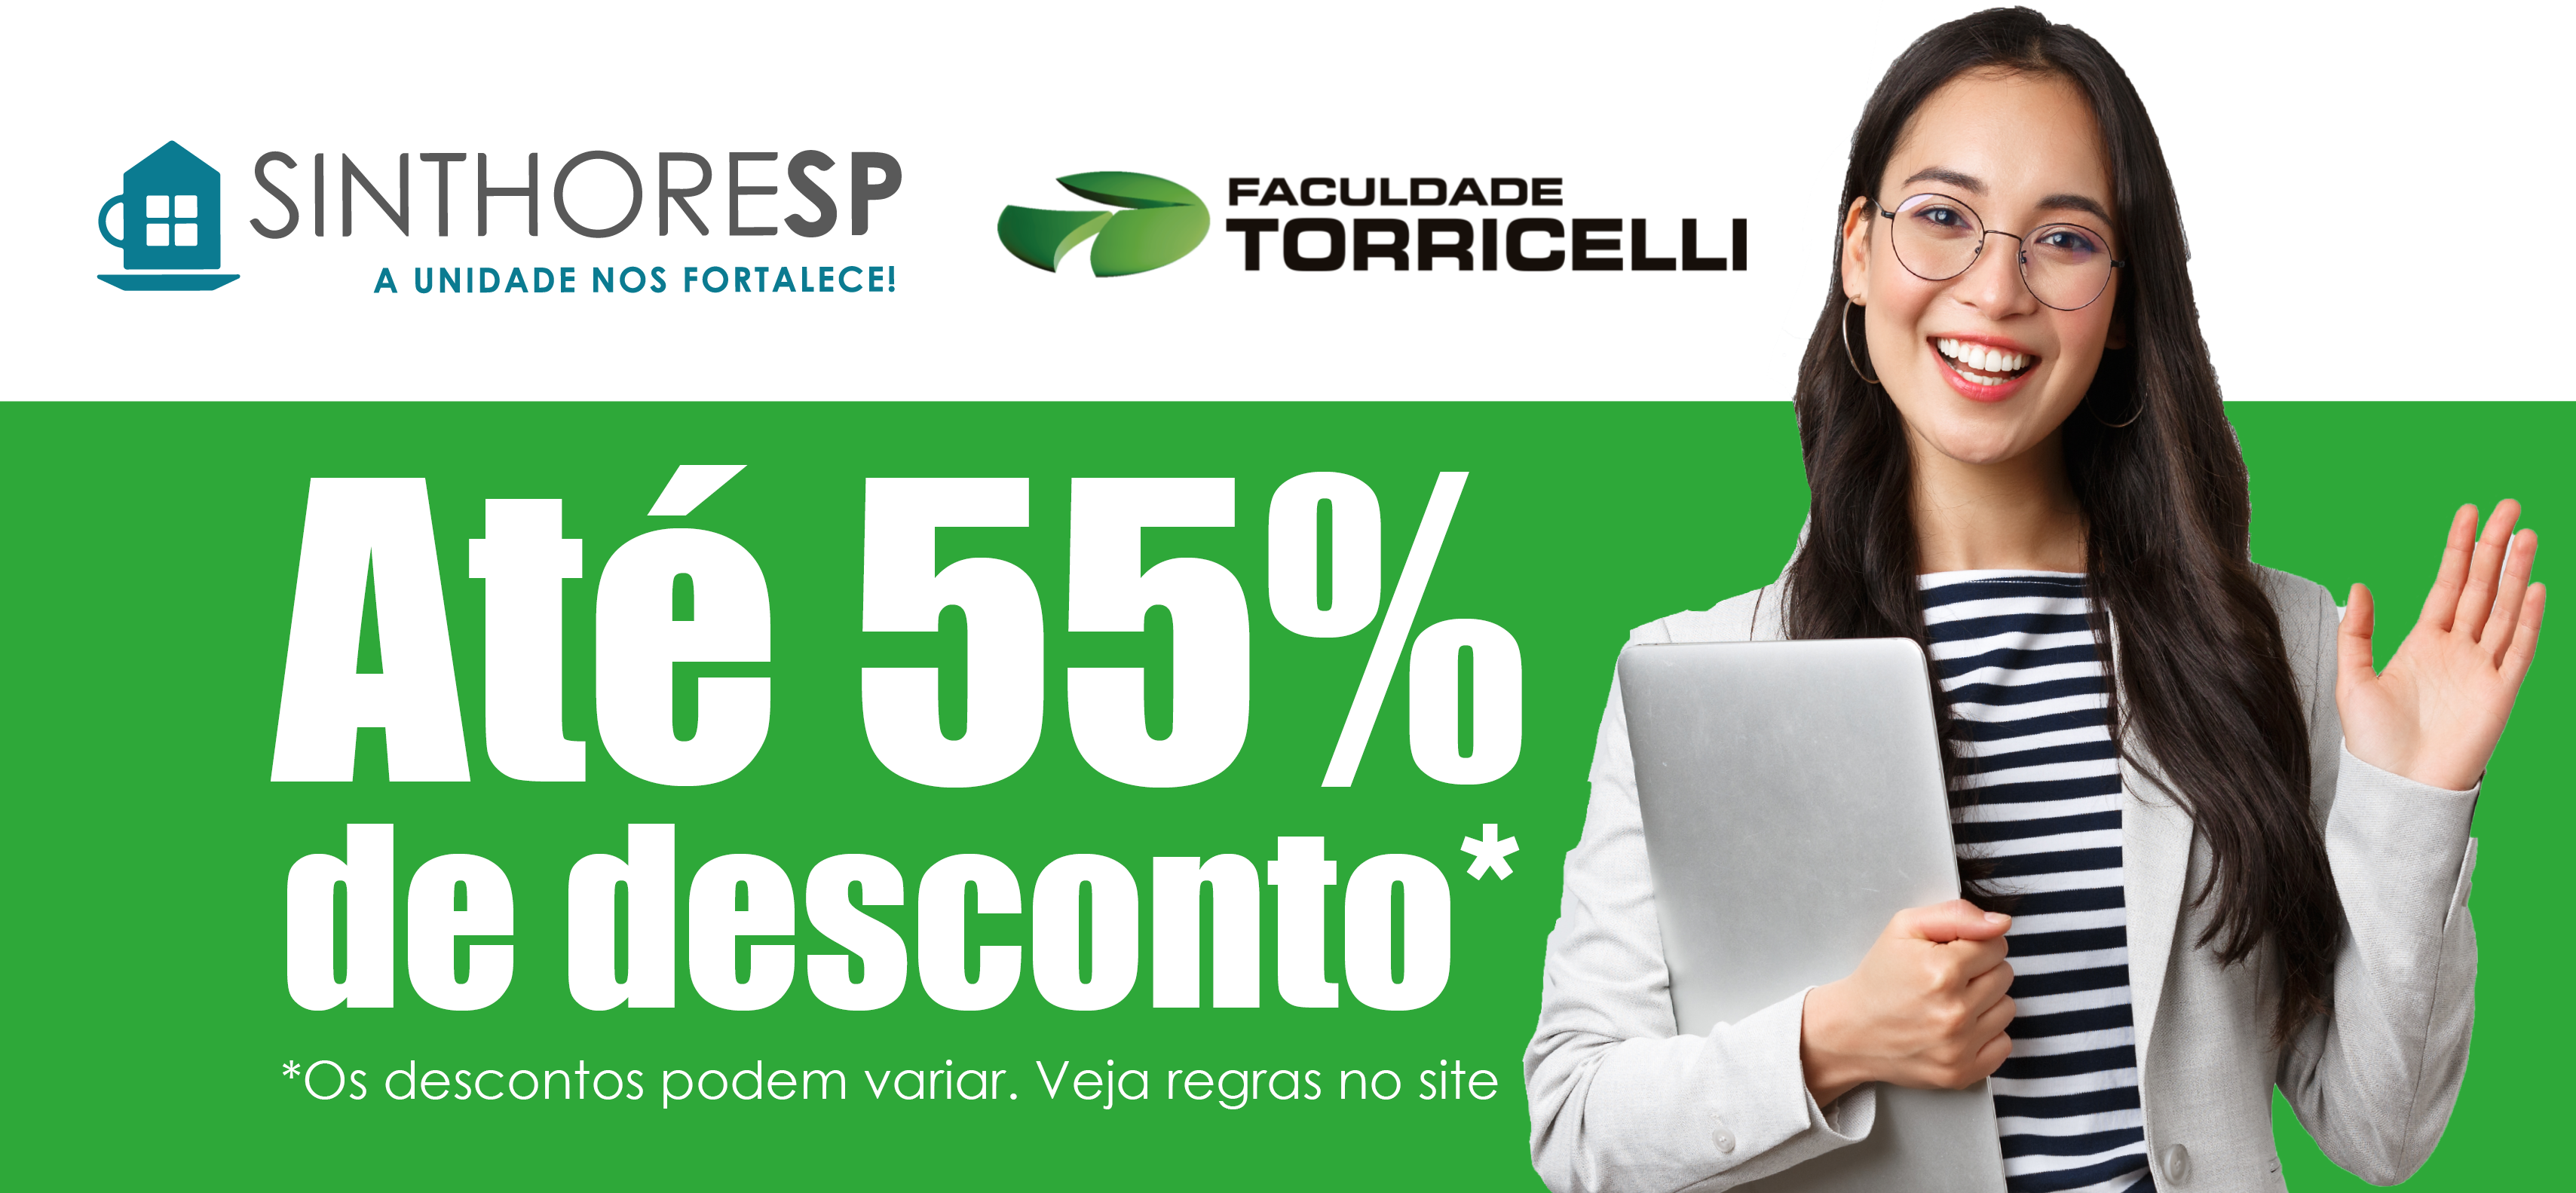 Nova parceria com a Faculdade Torricelli garante descontos de até 55% na graduação